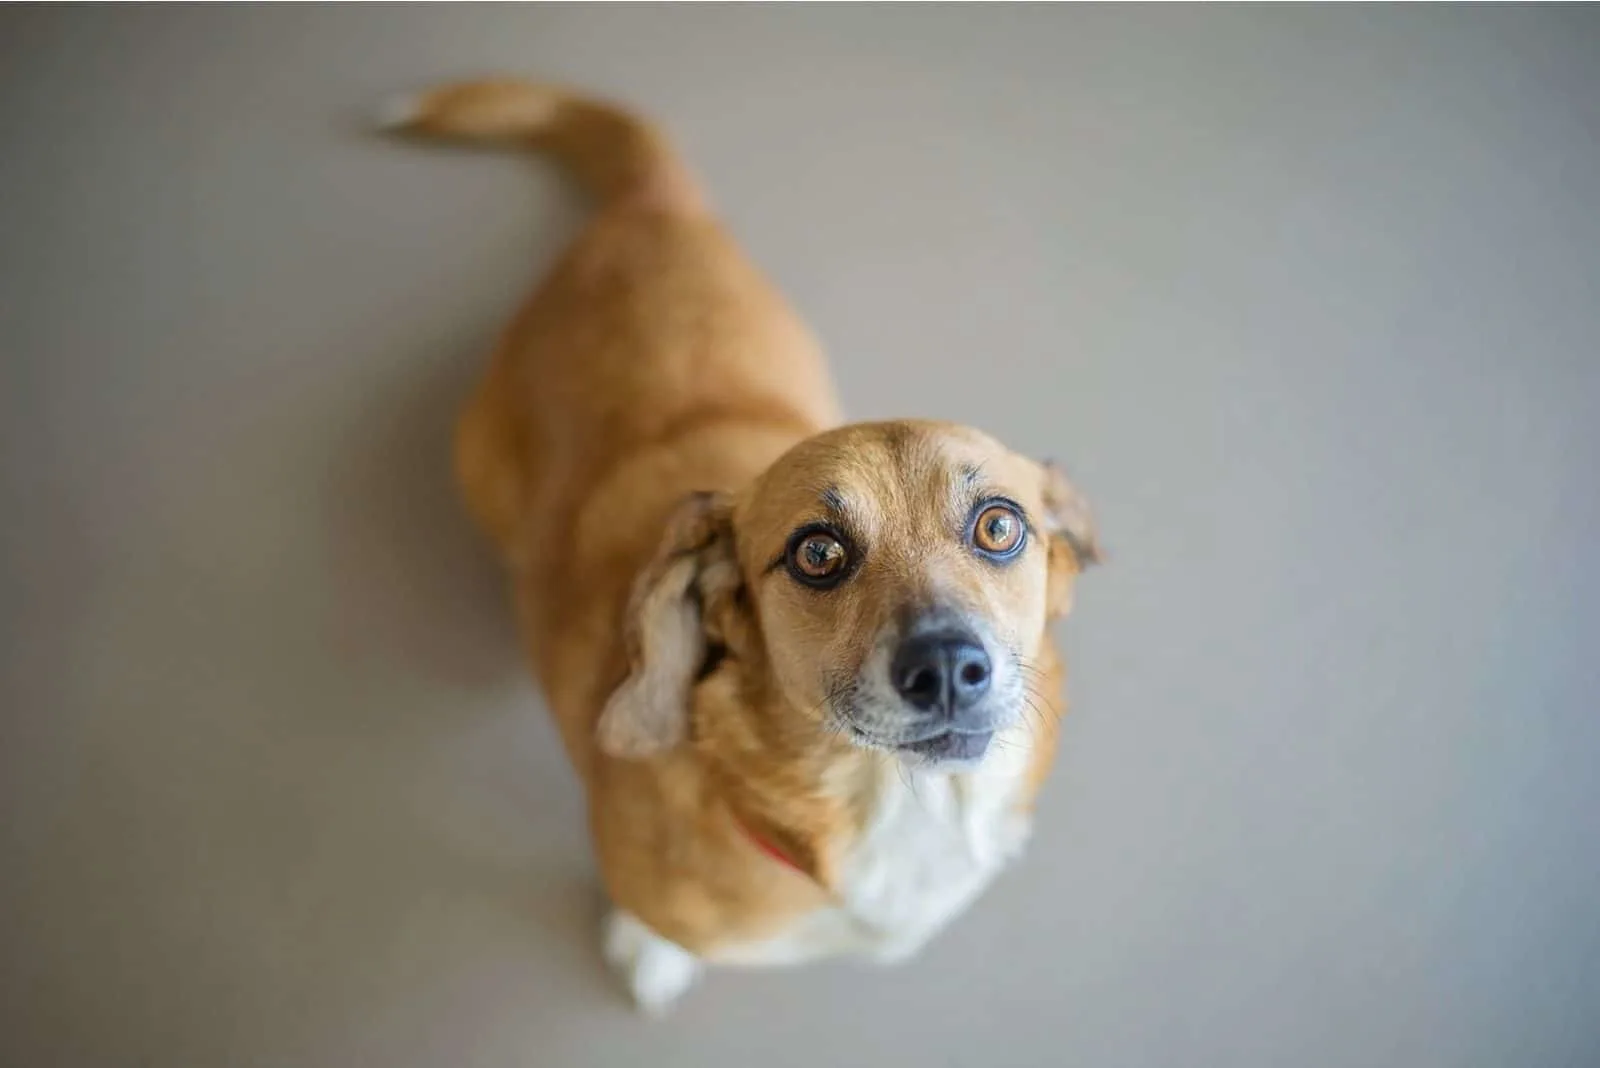 corgi mix beagle dog looking up at the camera